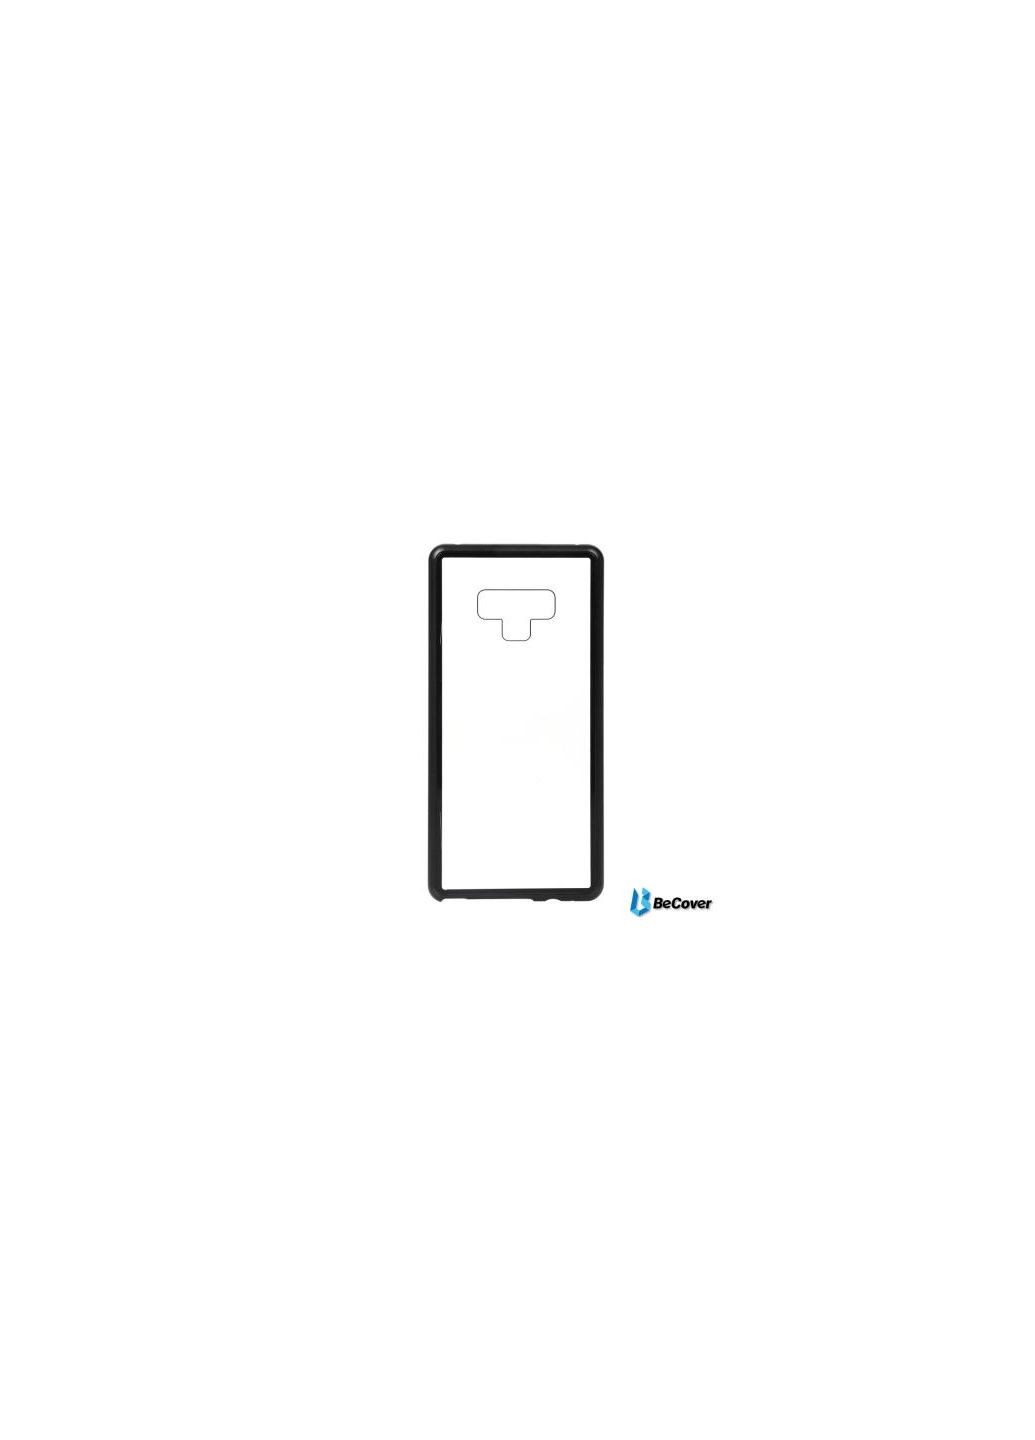 Чехол для мобильного телефона Magnetite Hardware Galaxy Note 9 SMN960 Black (702797) BeCover magnetite hardware galaxy note 9 sm-n960 black (275100828)